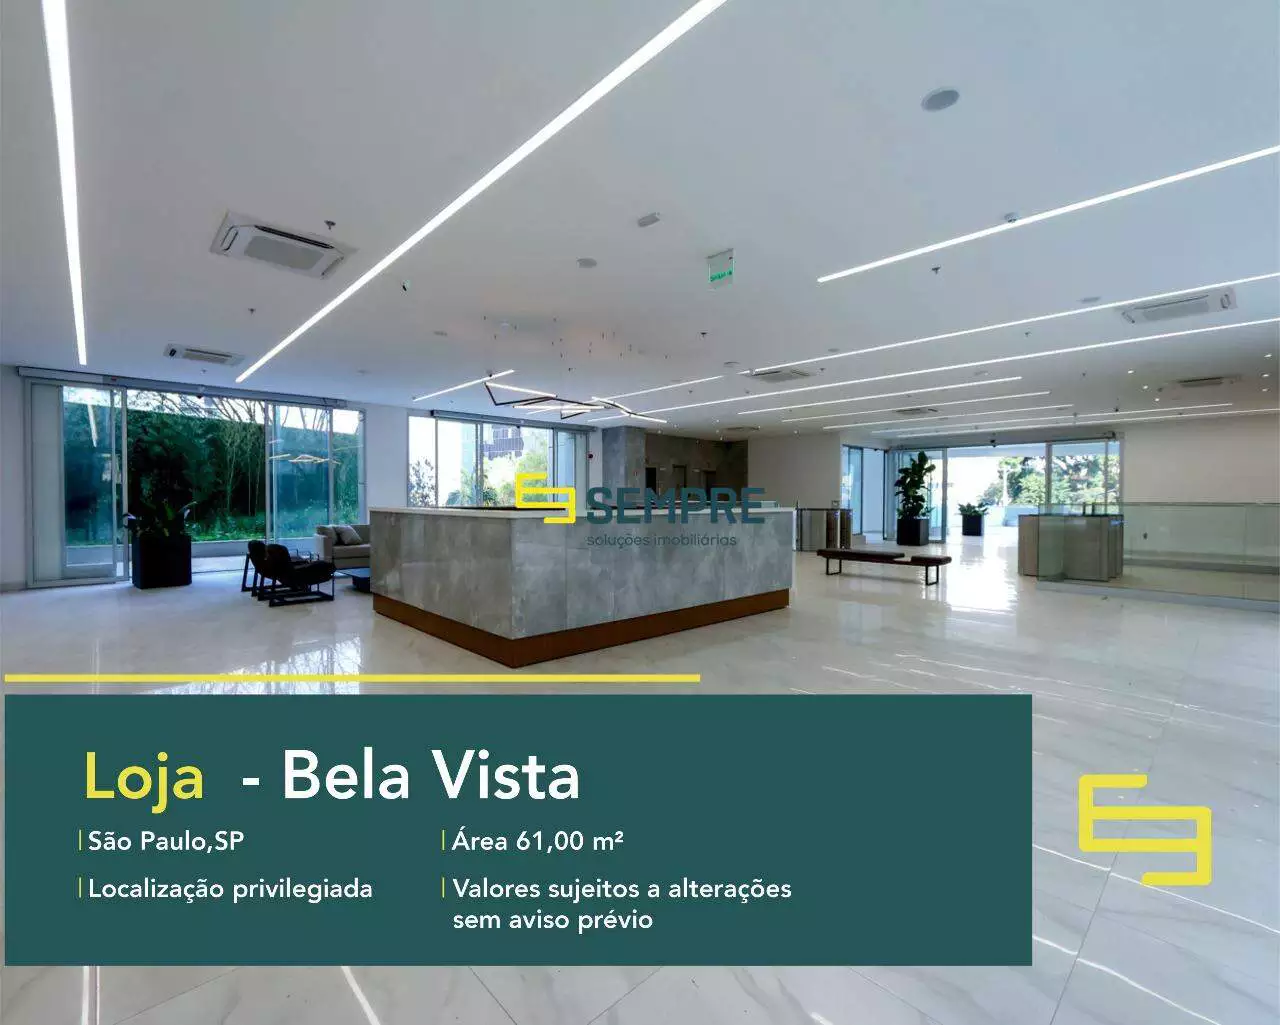 Loja no Bela Vista para locação em São Paulo - Martiniano Center, excelente localização. O estabelecimento comercial conta com área de 61 m².